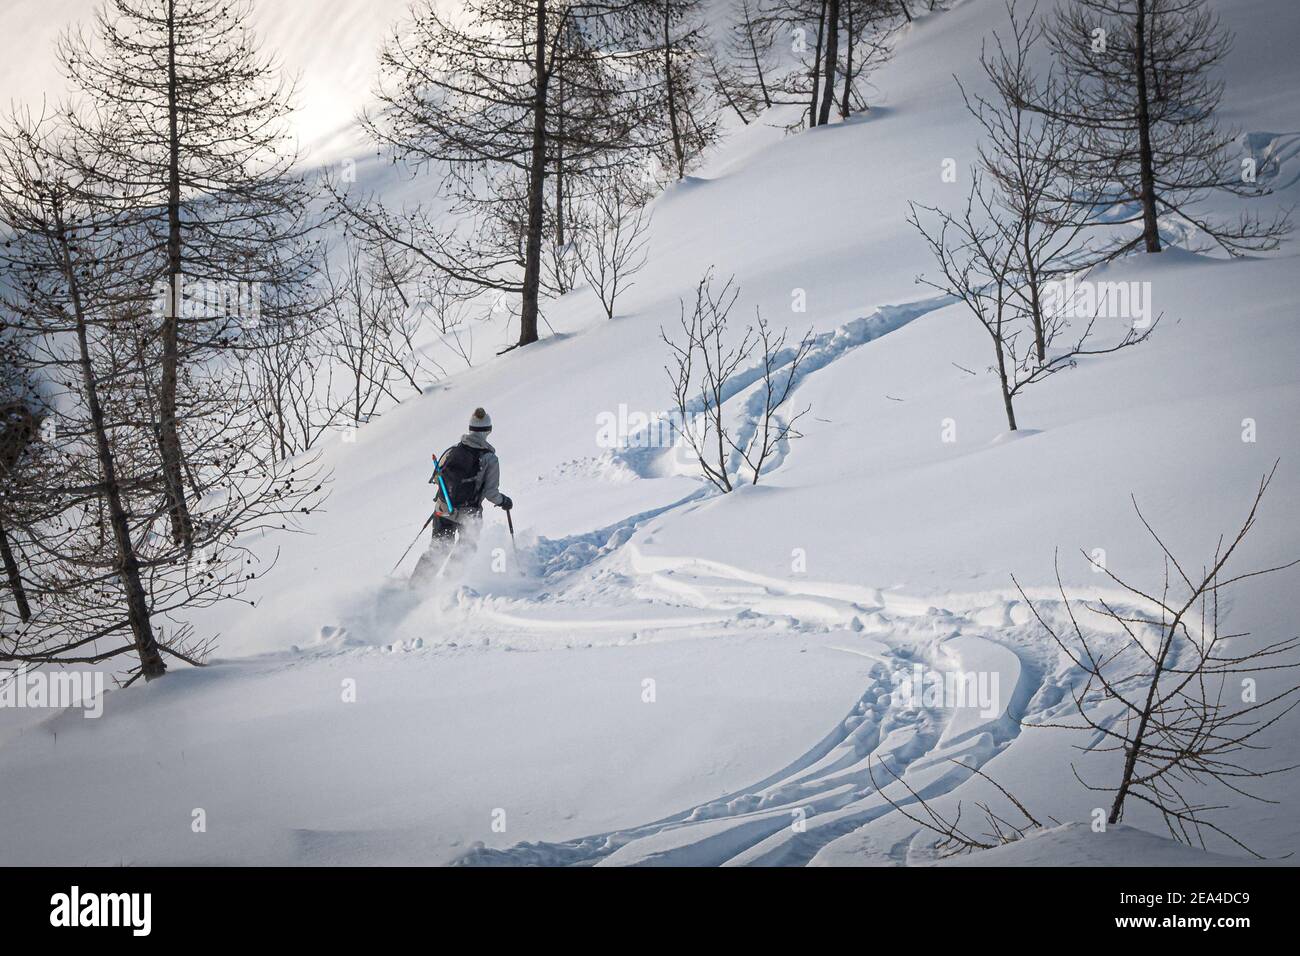 Une skieuse freeskier féminine fait de nouvelles pistes le long de deux autres pistes dans la neige poudreuse en hiver pente de montagne dans les arbres dans Chamonix France Banque D'Images